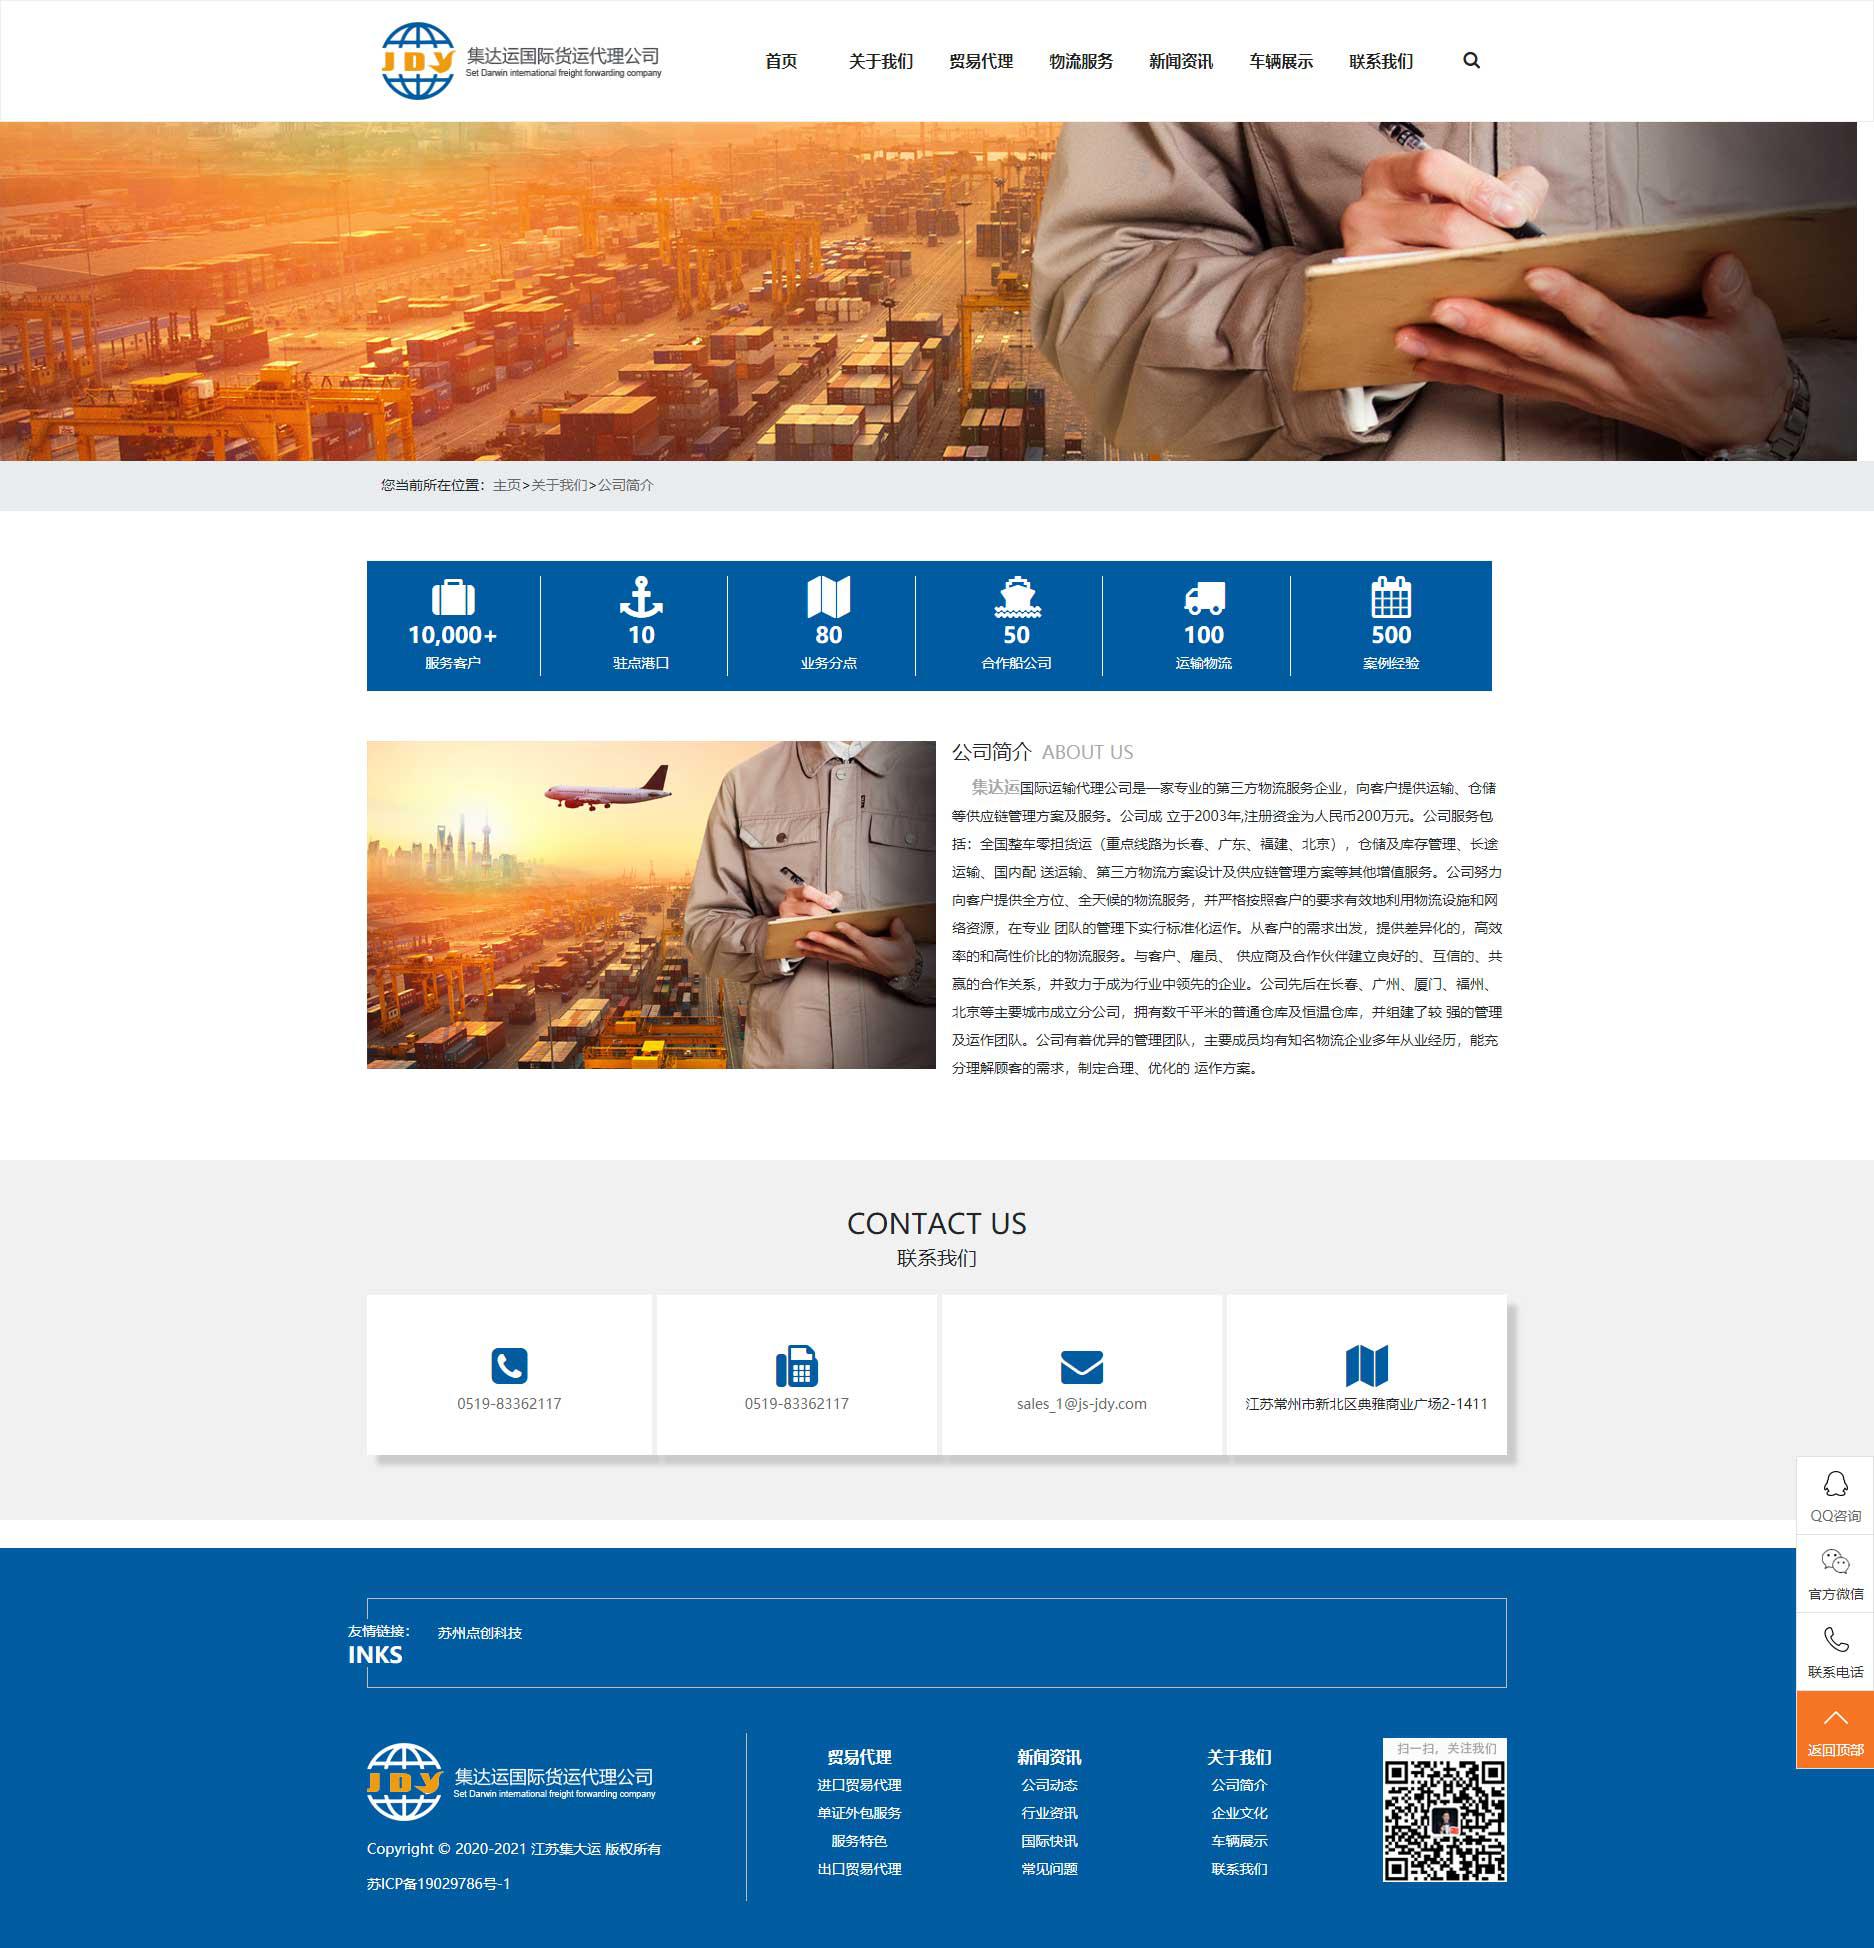 苏州网站建设公司点创科技为江苏集达运国际运输代理公司设计的公司简介页面